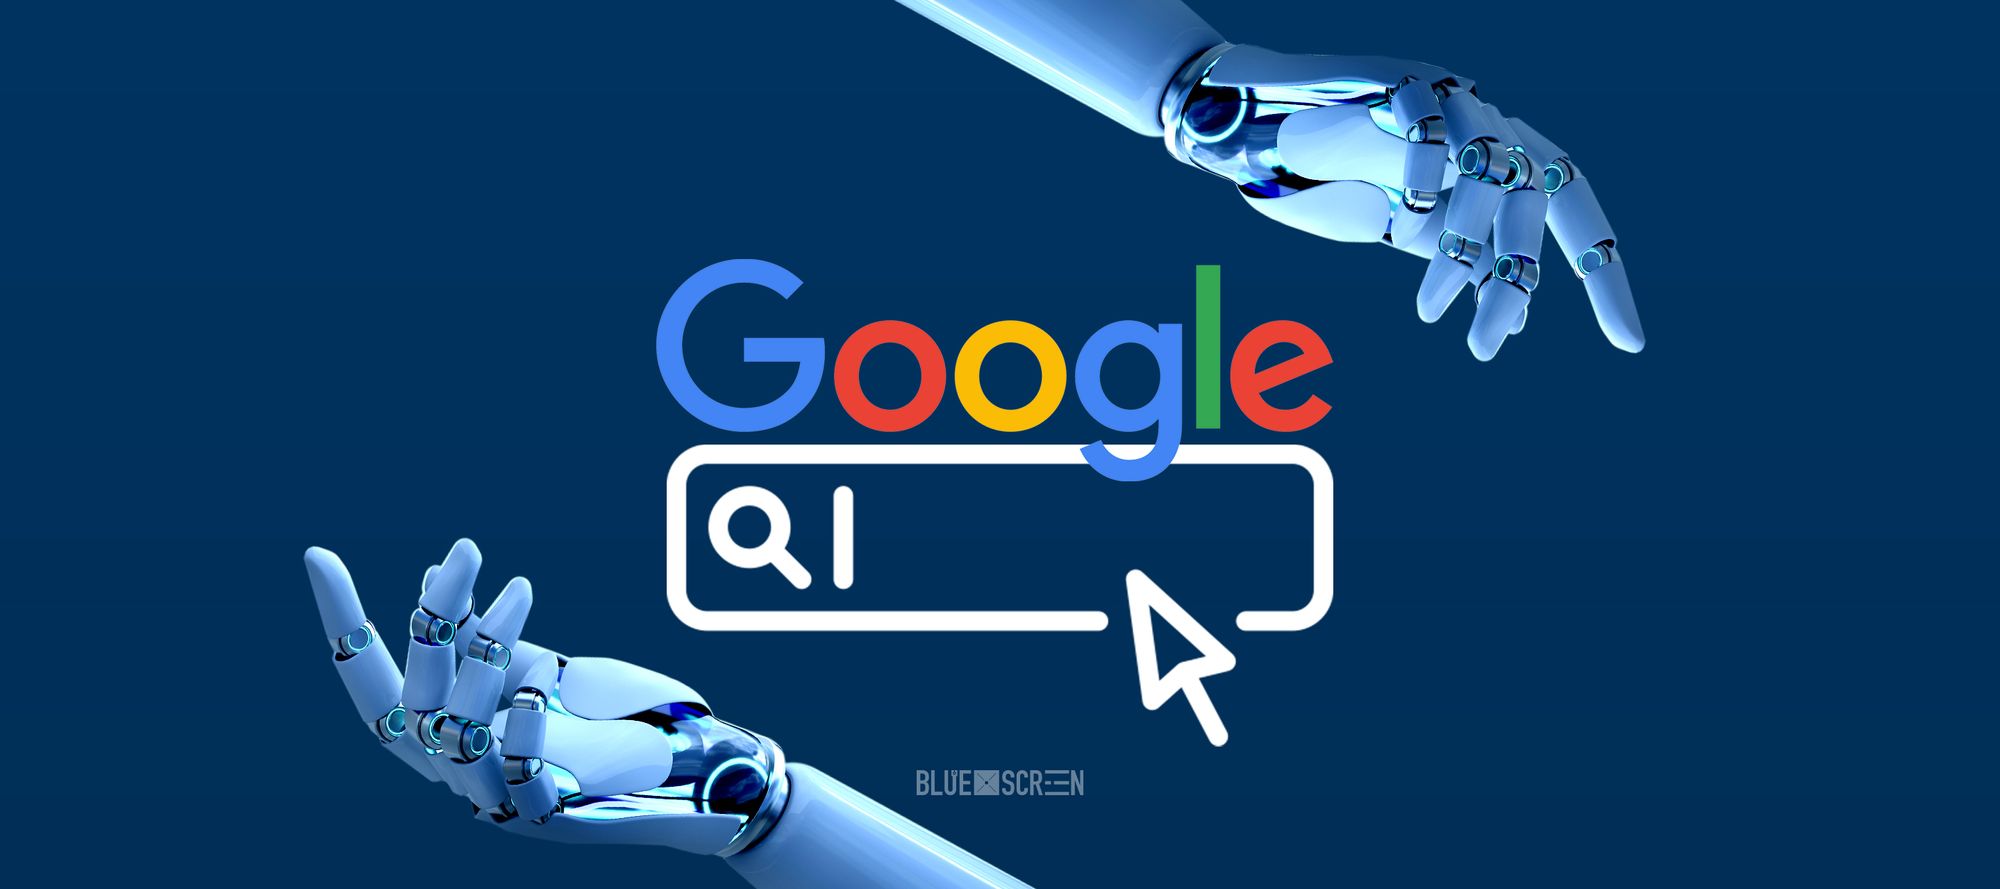 Google внедряет искусственный интеллект в «Поиск», «Карты» и «Переводчик»